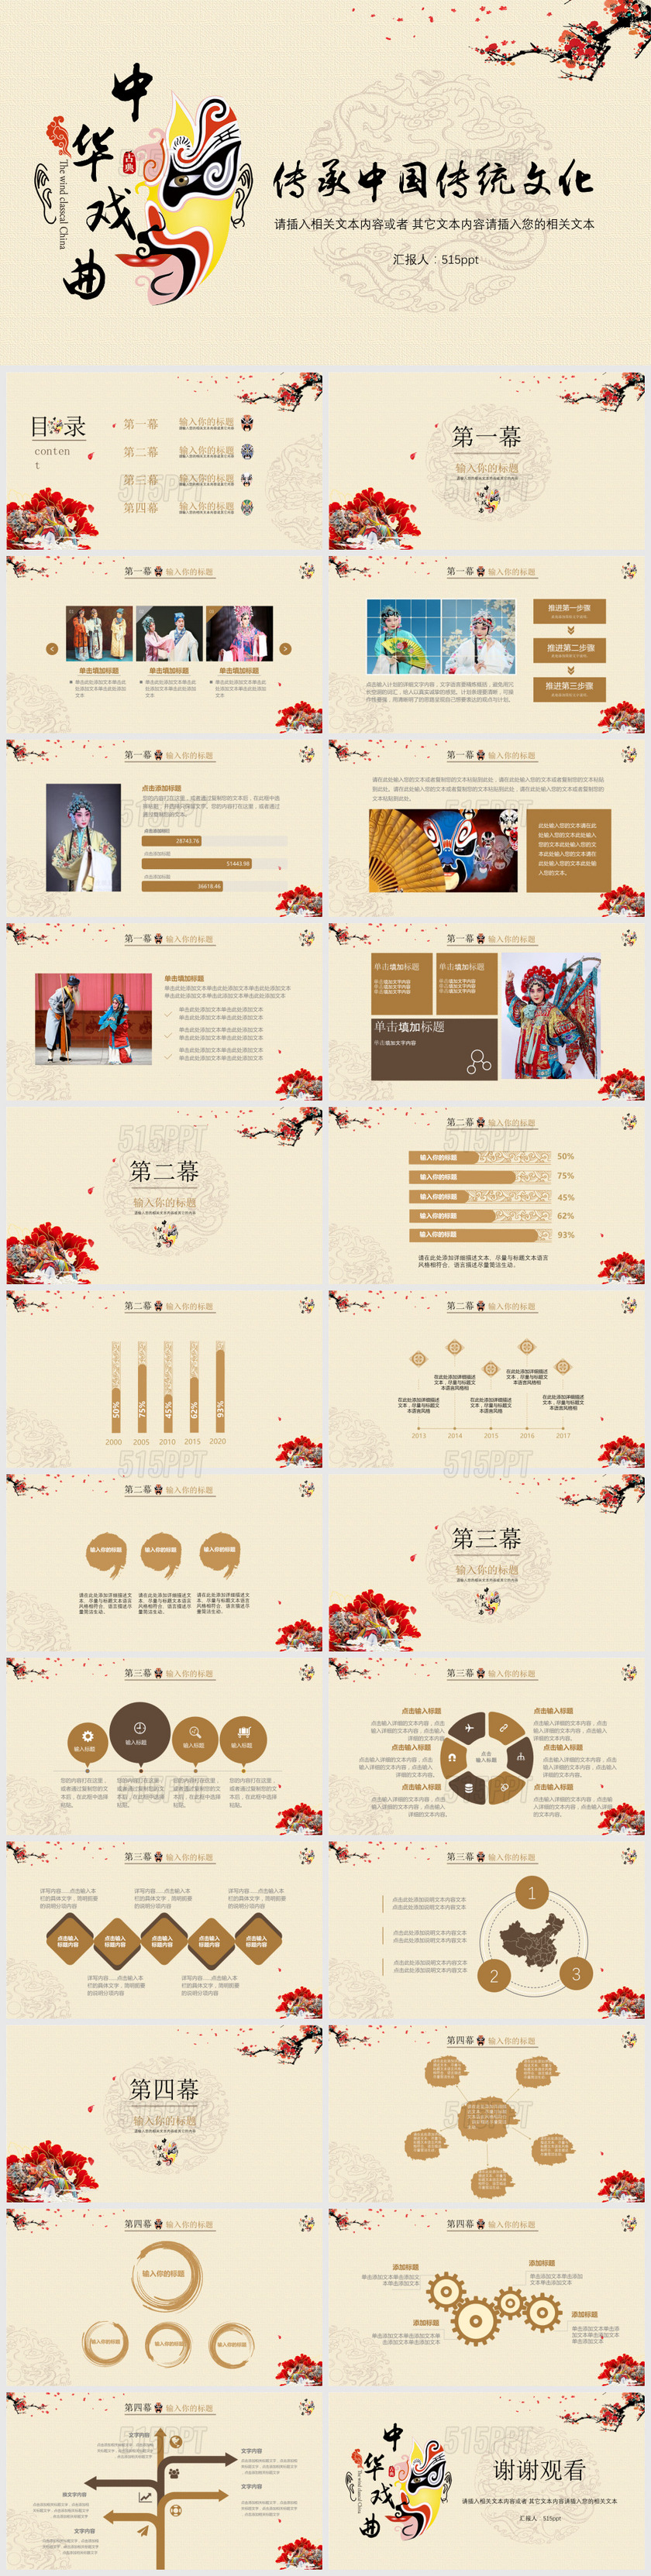 中国风戏曲文化传承中国文化PPT模板